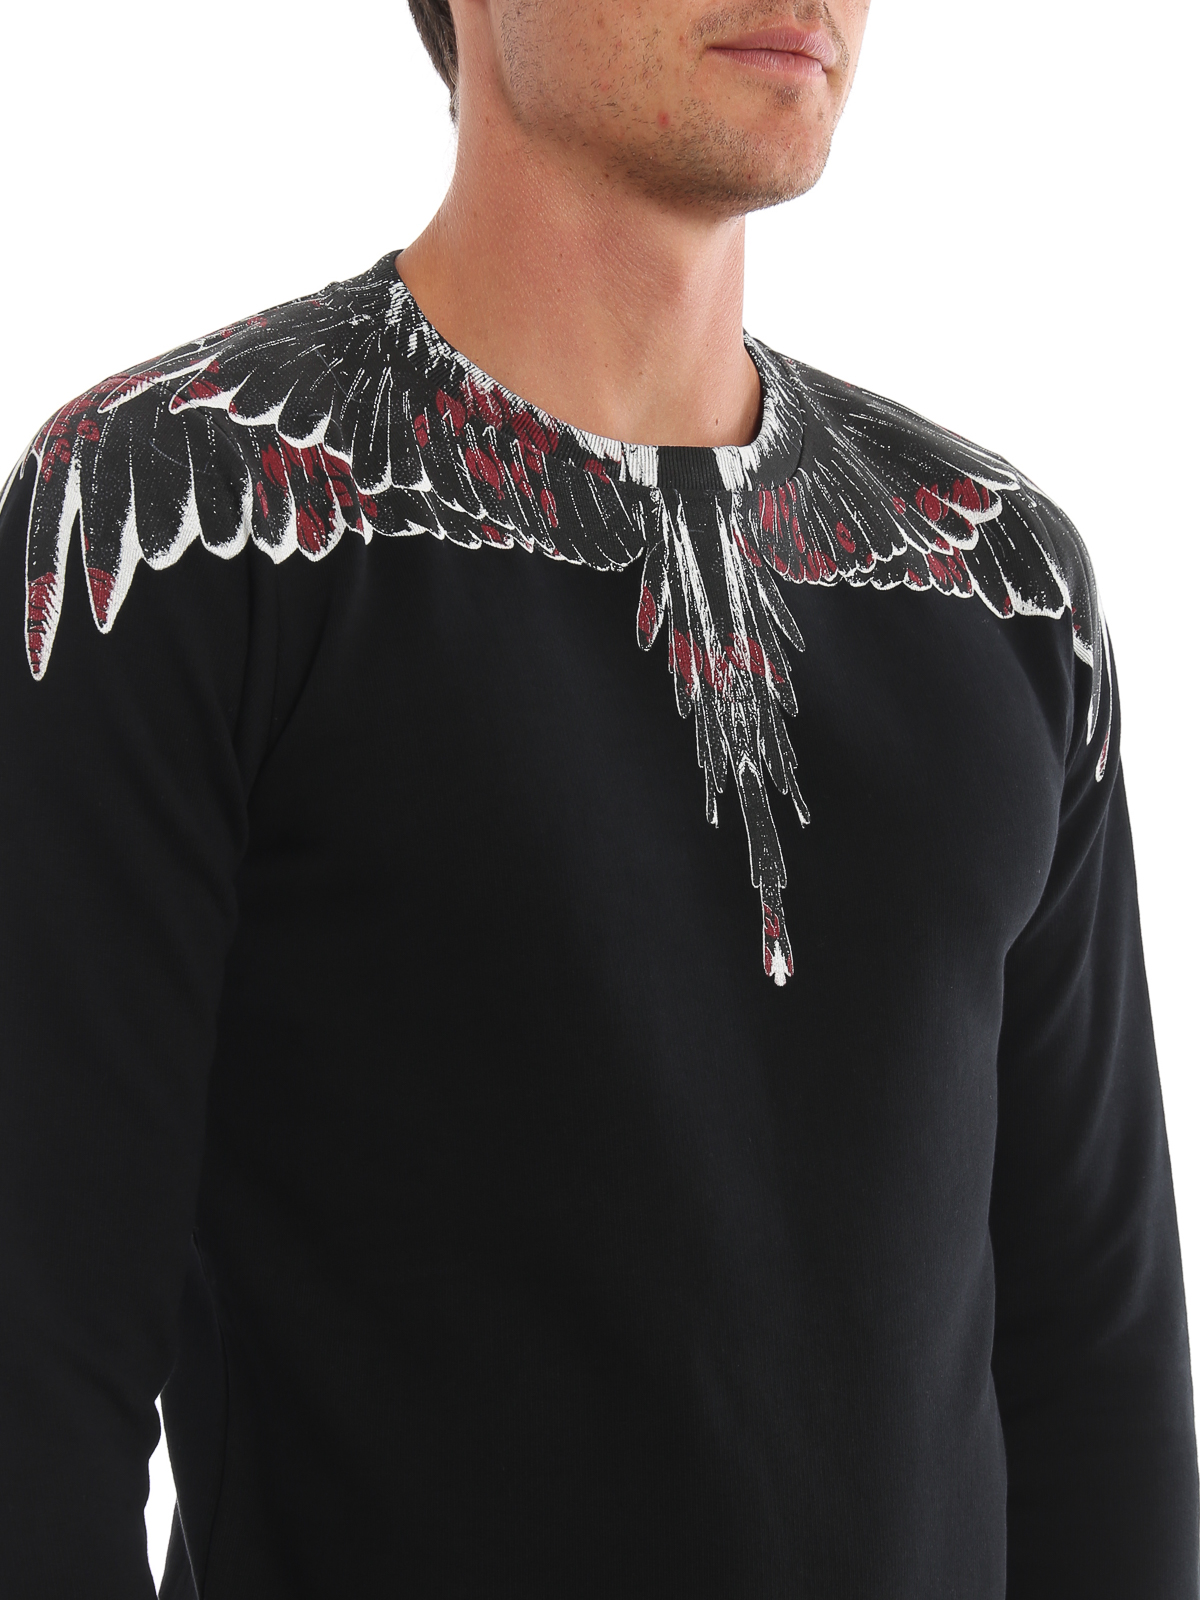 & Sweaters Burlon - Flower Wings black sweatshirt - CMBA009E196300081088